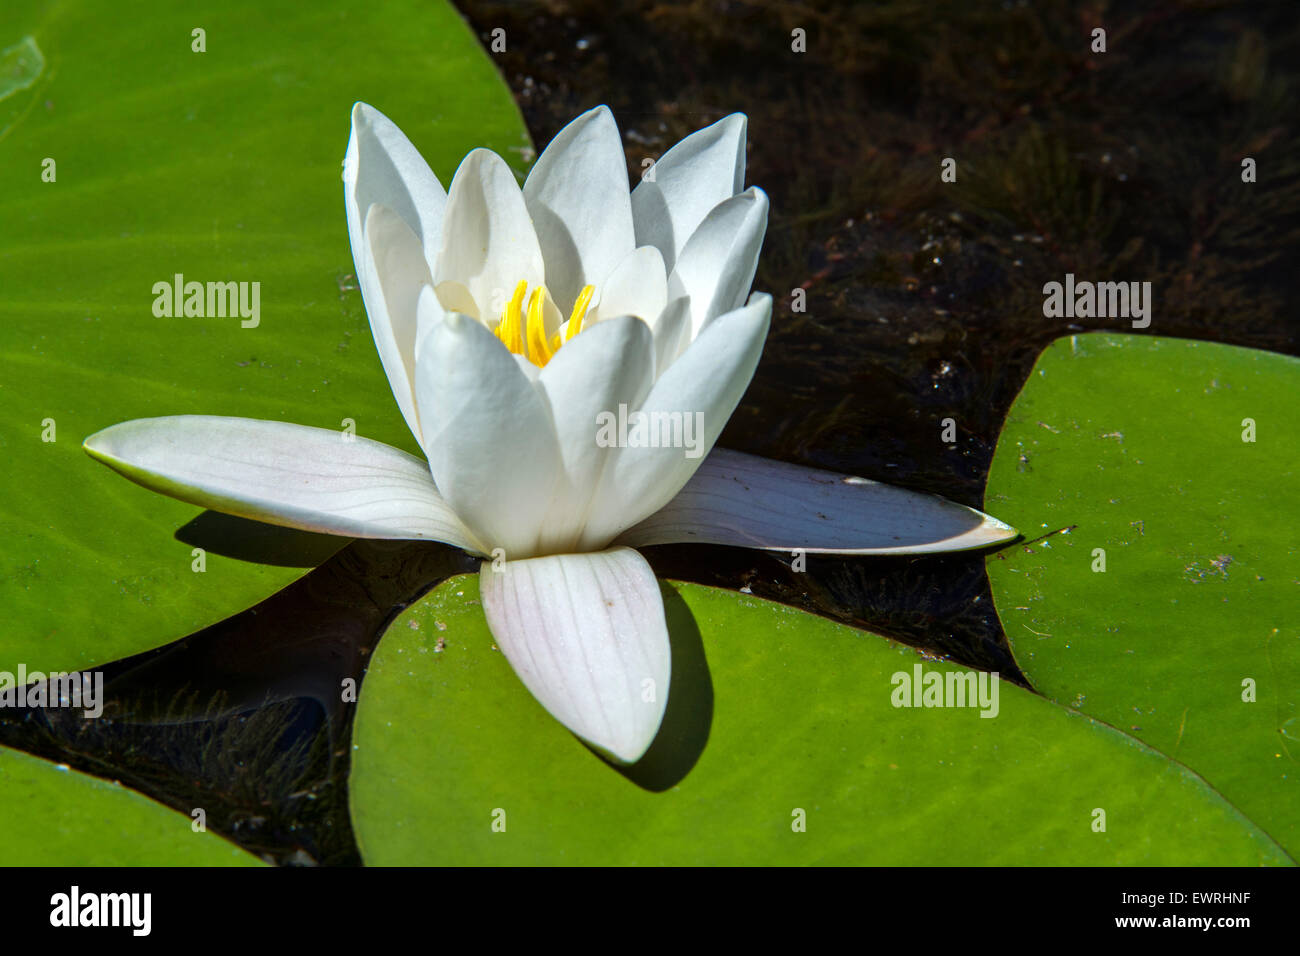 Europäische Weiße Seerose / Weiße Seerose / white Lotus / Wildwasser stieg / Nenuphar (Nymphaea Alba) in Blüte im Teich Stockfoto